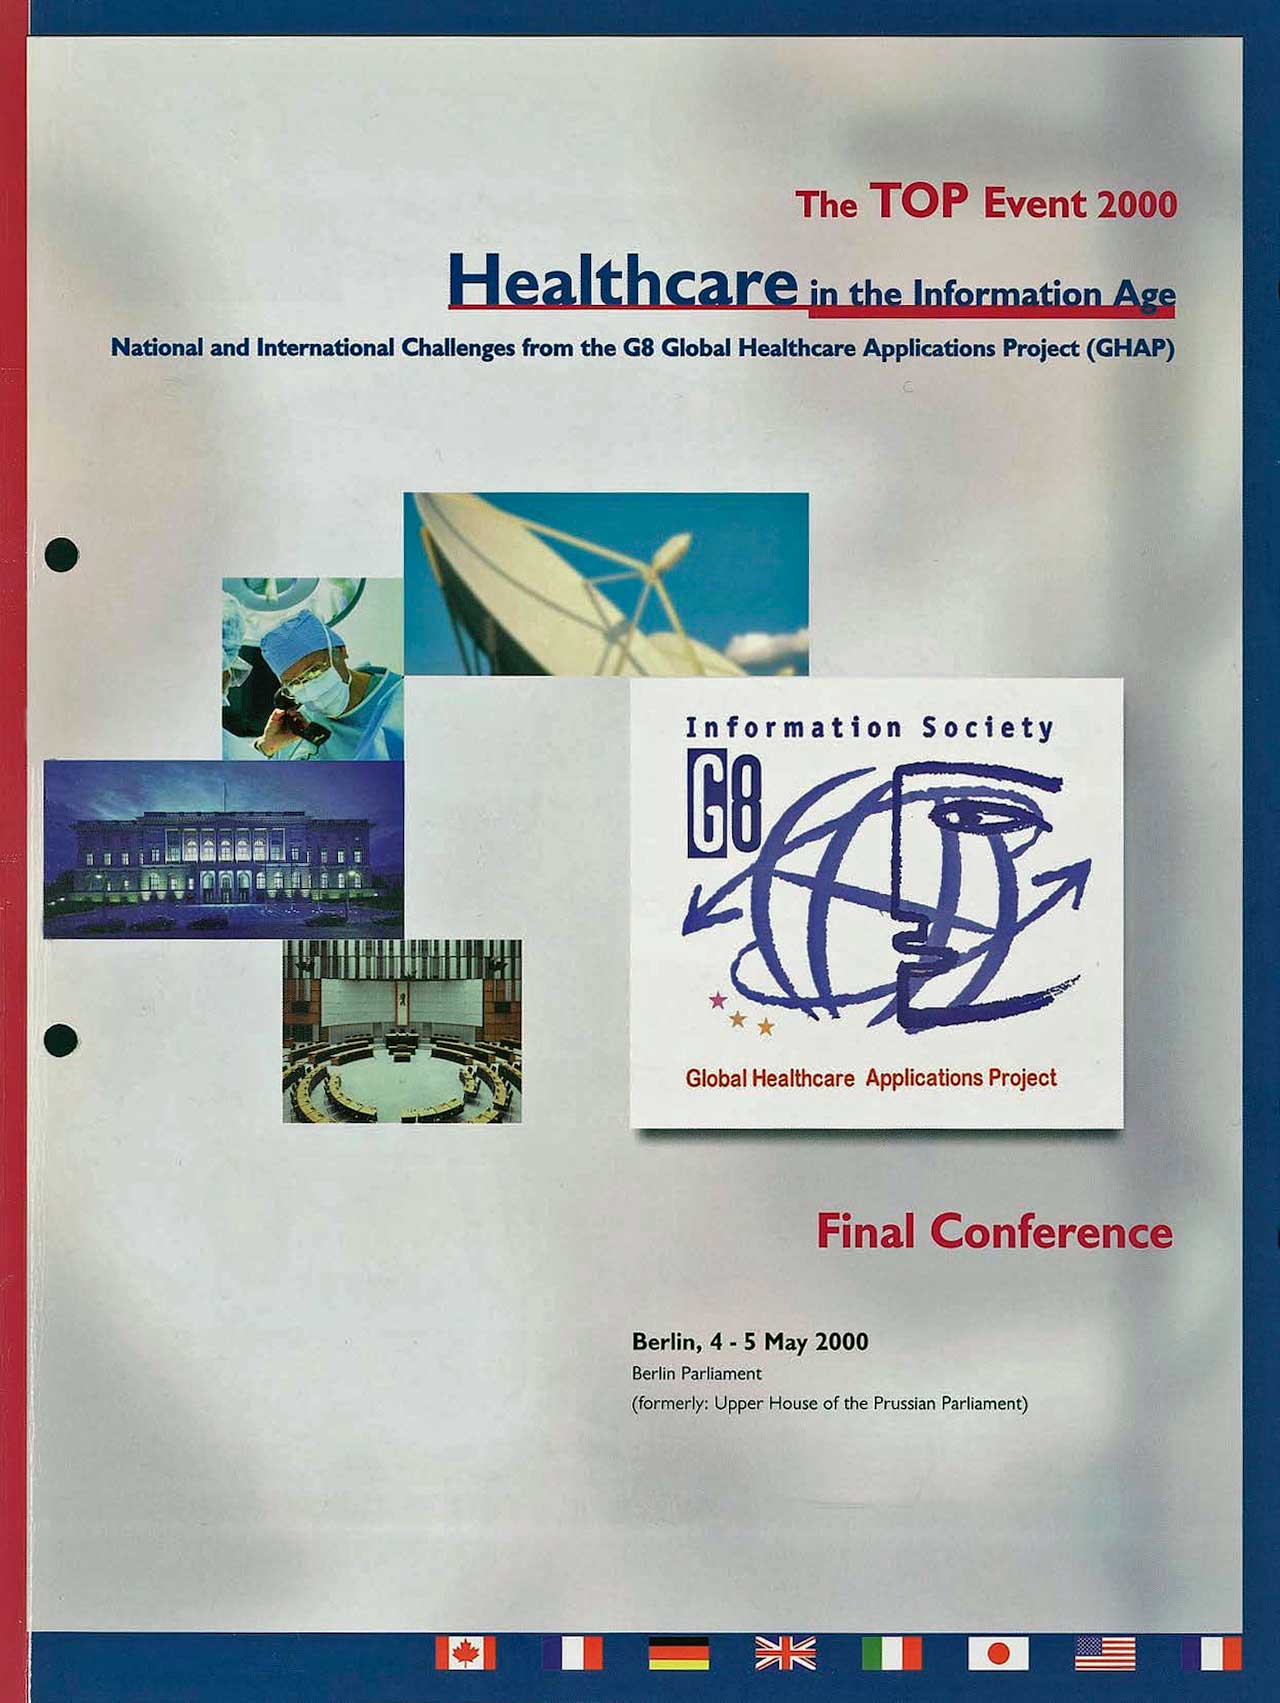 Das Programm der abschließenden Konferenz zum Gesundheitsthema des G-8-Gipfels im Mai 2000 in Berlin, bei dem Alexander Ammann Chairman des Organisationsteams war.